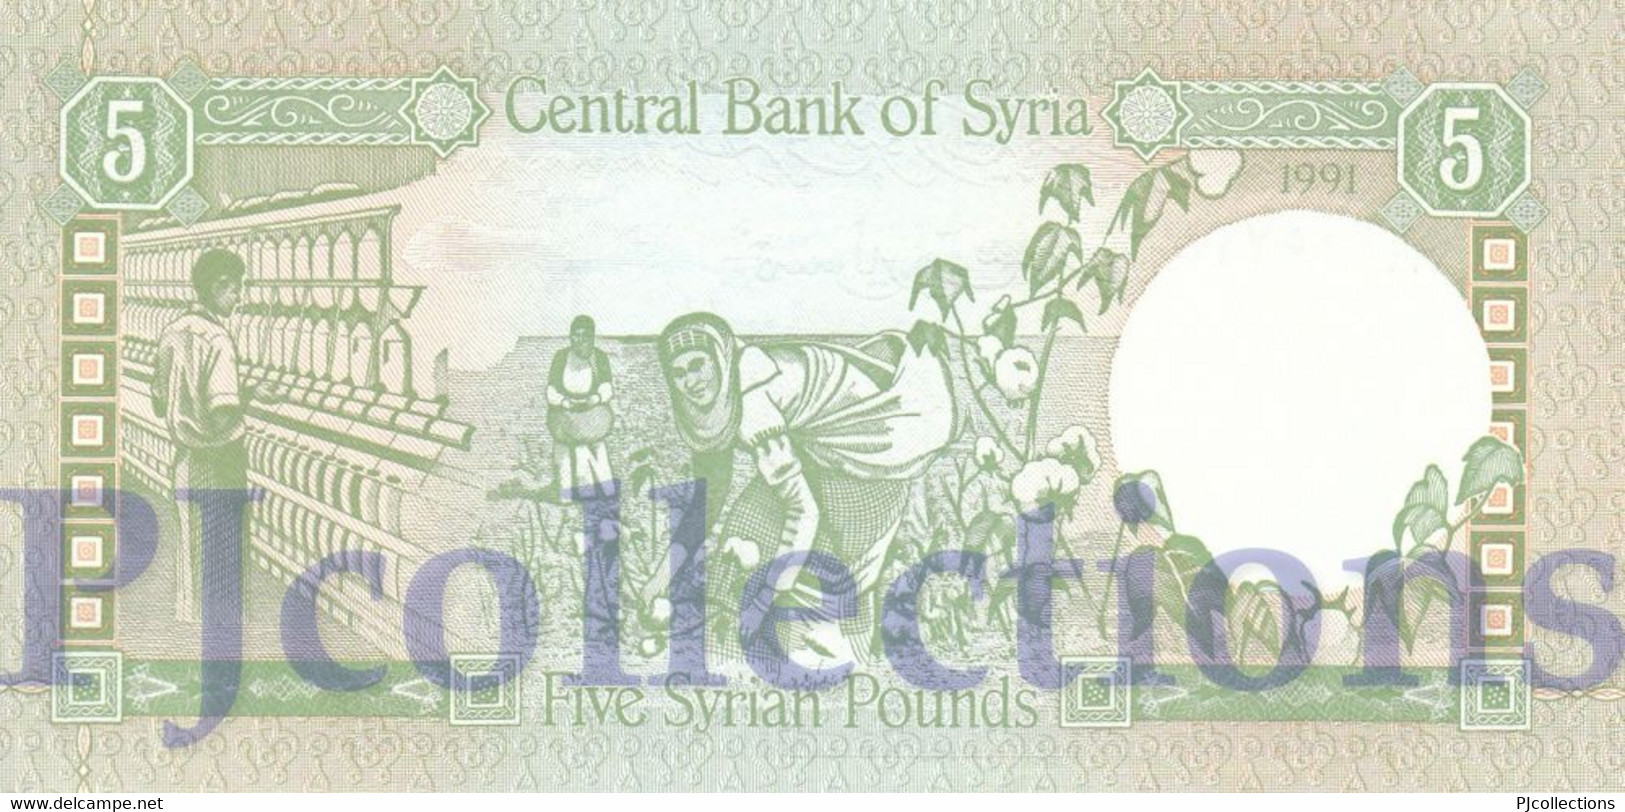 SYRIA 5 POUNDS 1991 PICK 100e UNC - Siria